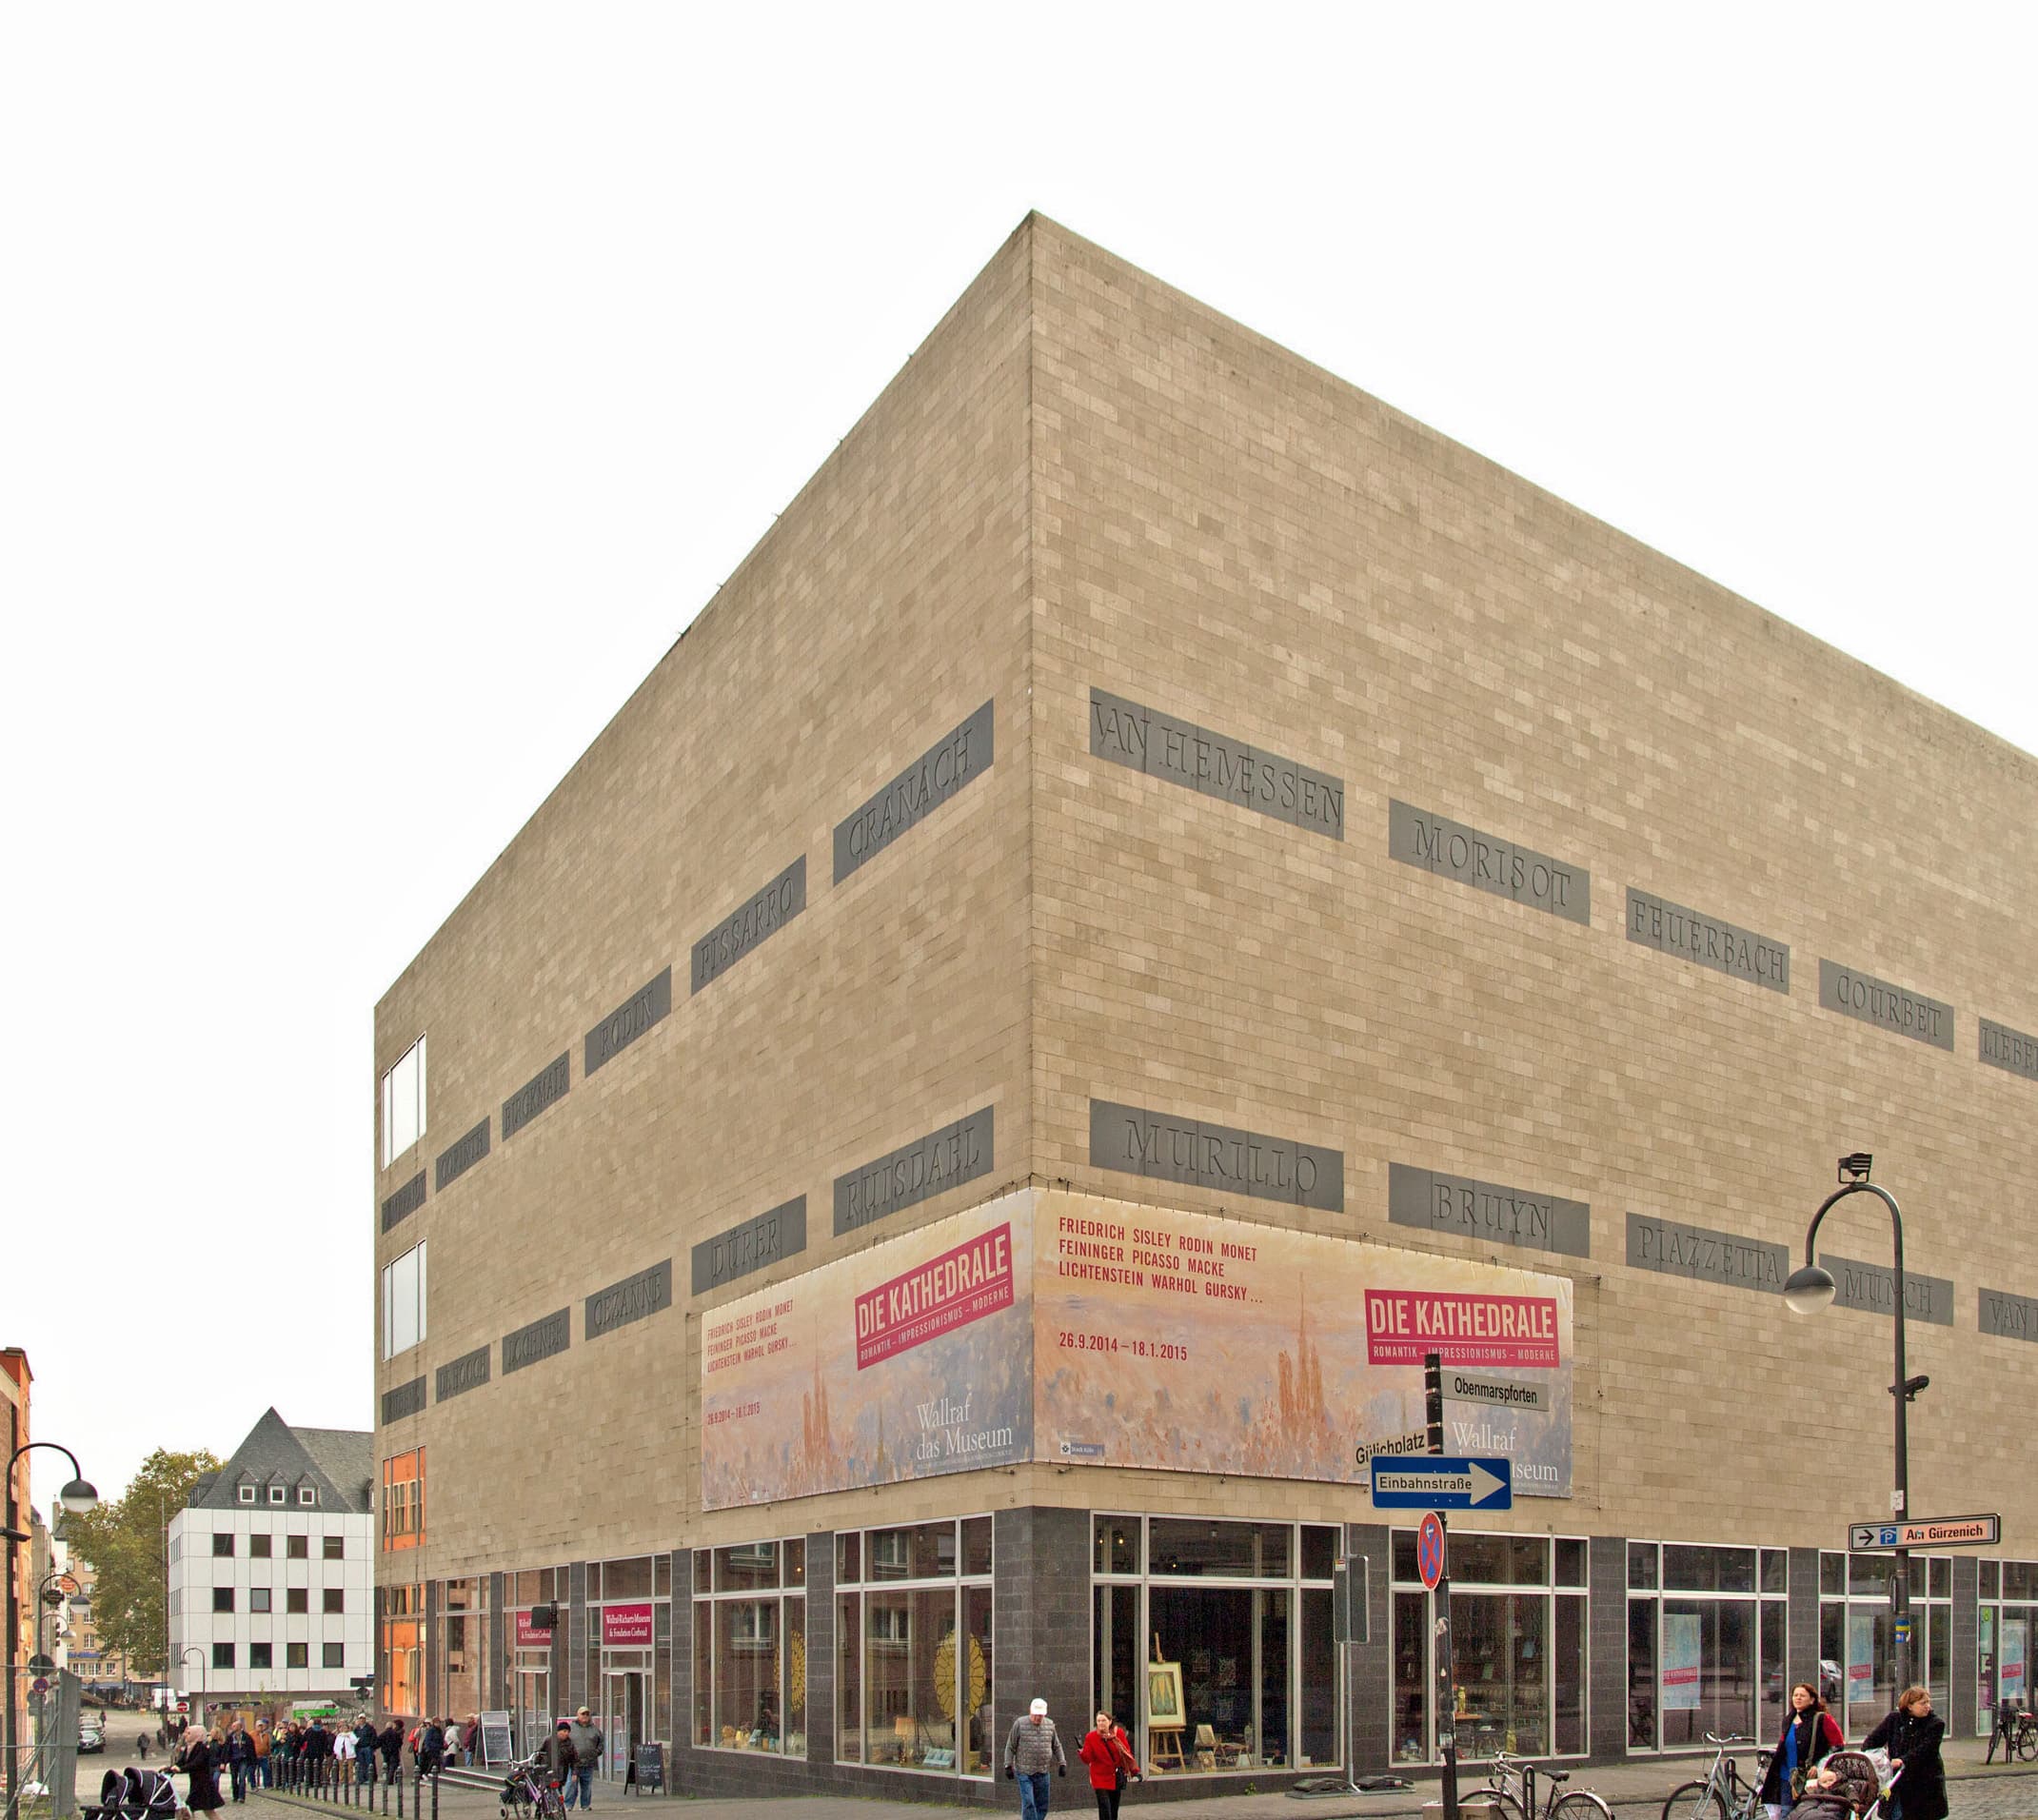 Das Wallraff-Richartz-Museum verbindet in seinem neuen Projekt Analoges mit Digitalem. © Laurens Lamberty / Wallraff-Richartz-Museum & Foundation Corboud via Wikimedia Commons (gemeinfrei)